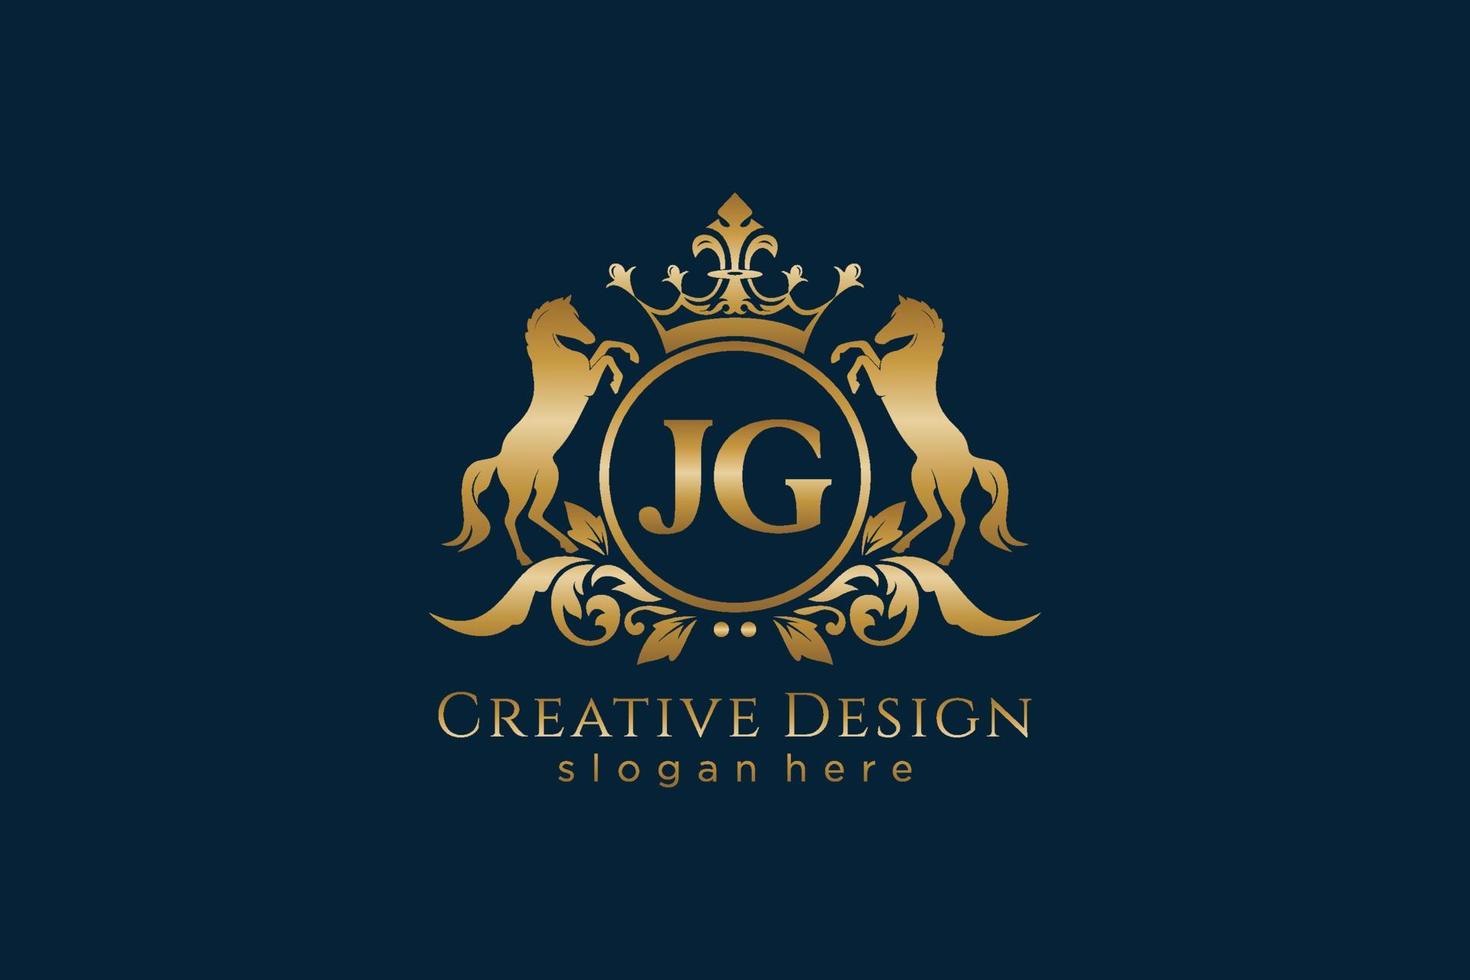 cresta dorada retro jg inicial con círculo y dos caballos, plantilla de insignia con pergaminos y corona real - perfecto para proyectos de marca de lujo vector